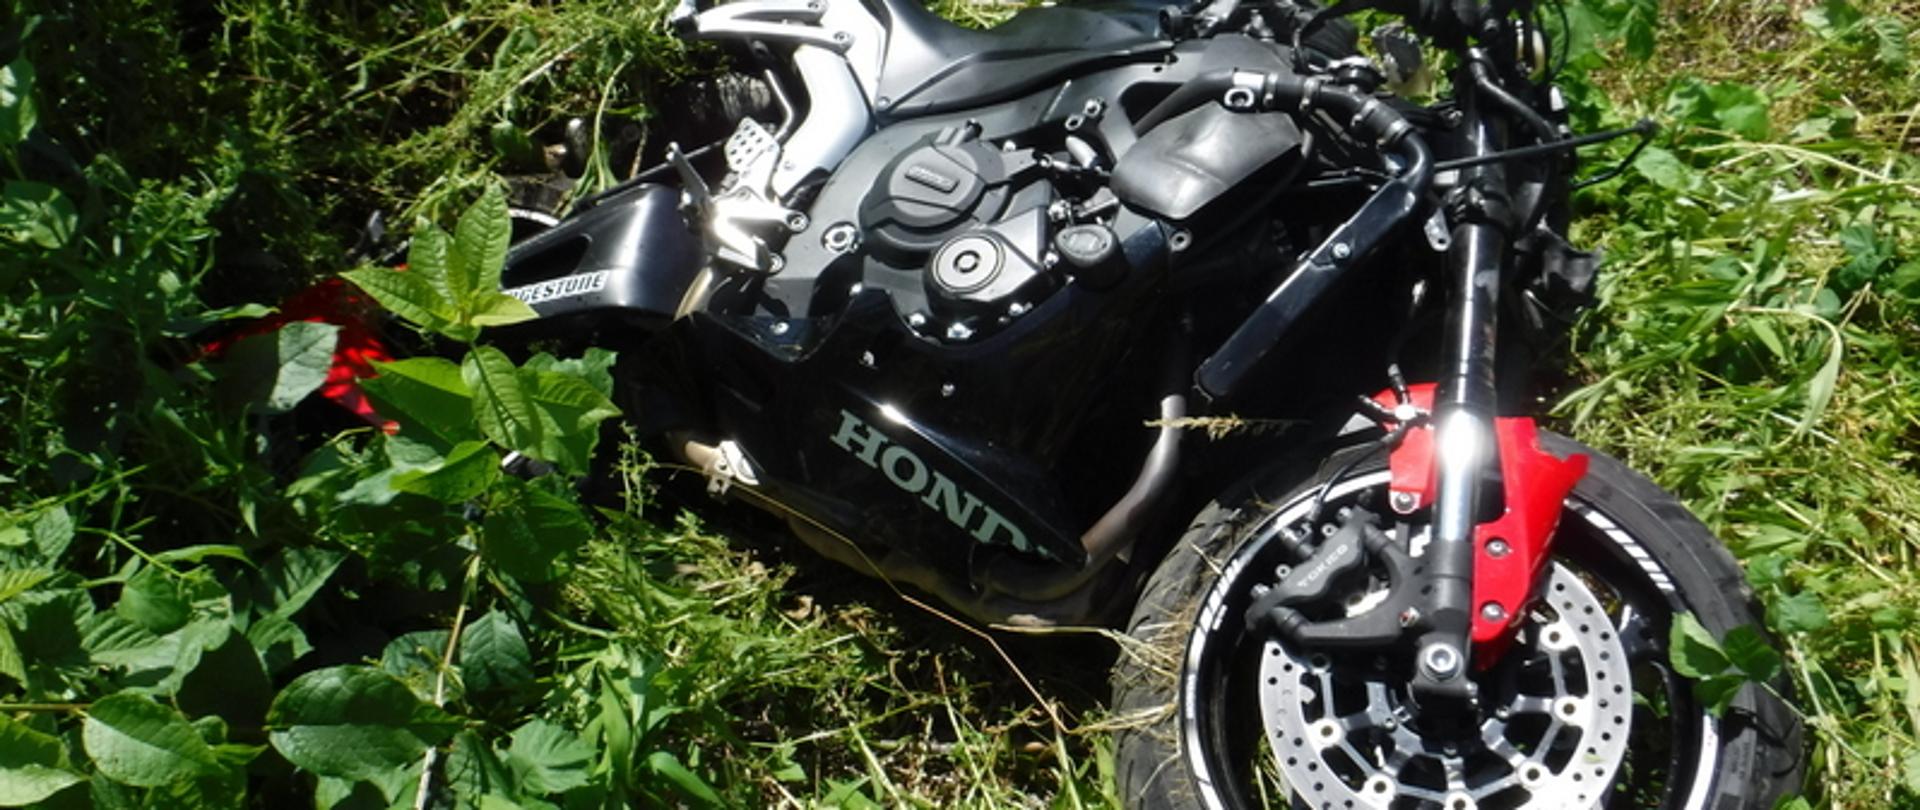 Zdjęcie przedstawia leżący motocykl marki Honda koloru czarnego z czerwonymi błotnikami. Motocykl leży na trawie na lewym boku. Widoczne zniszczenia bryły pojazdu z prawej strony - skrzywiona kierownica, uszkodzone siedzisko, uszkodzony błotnik.